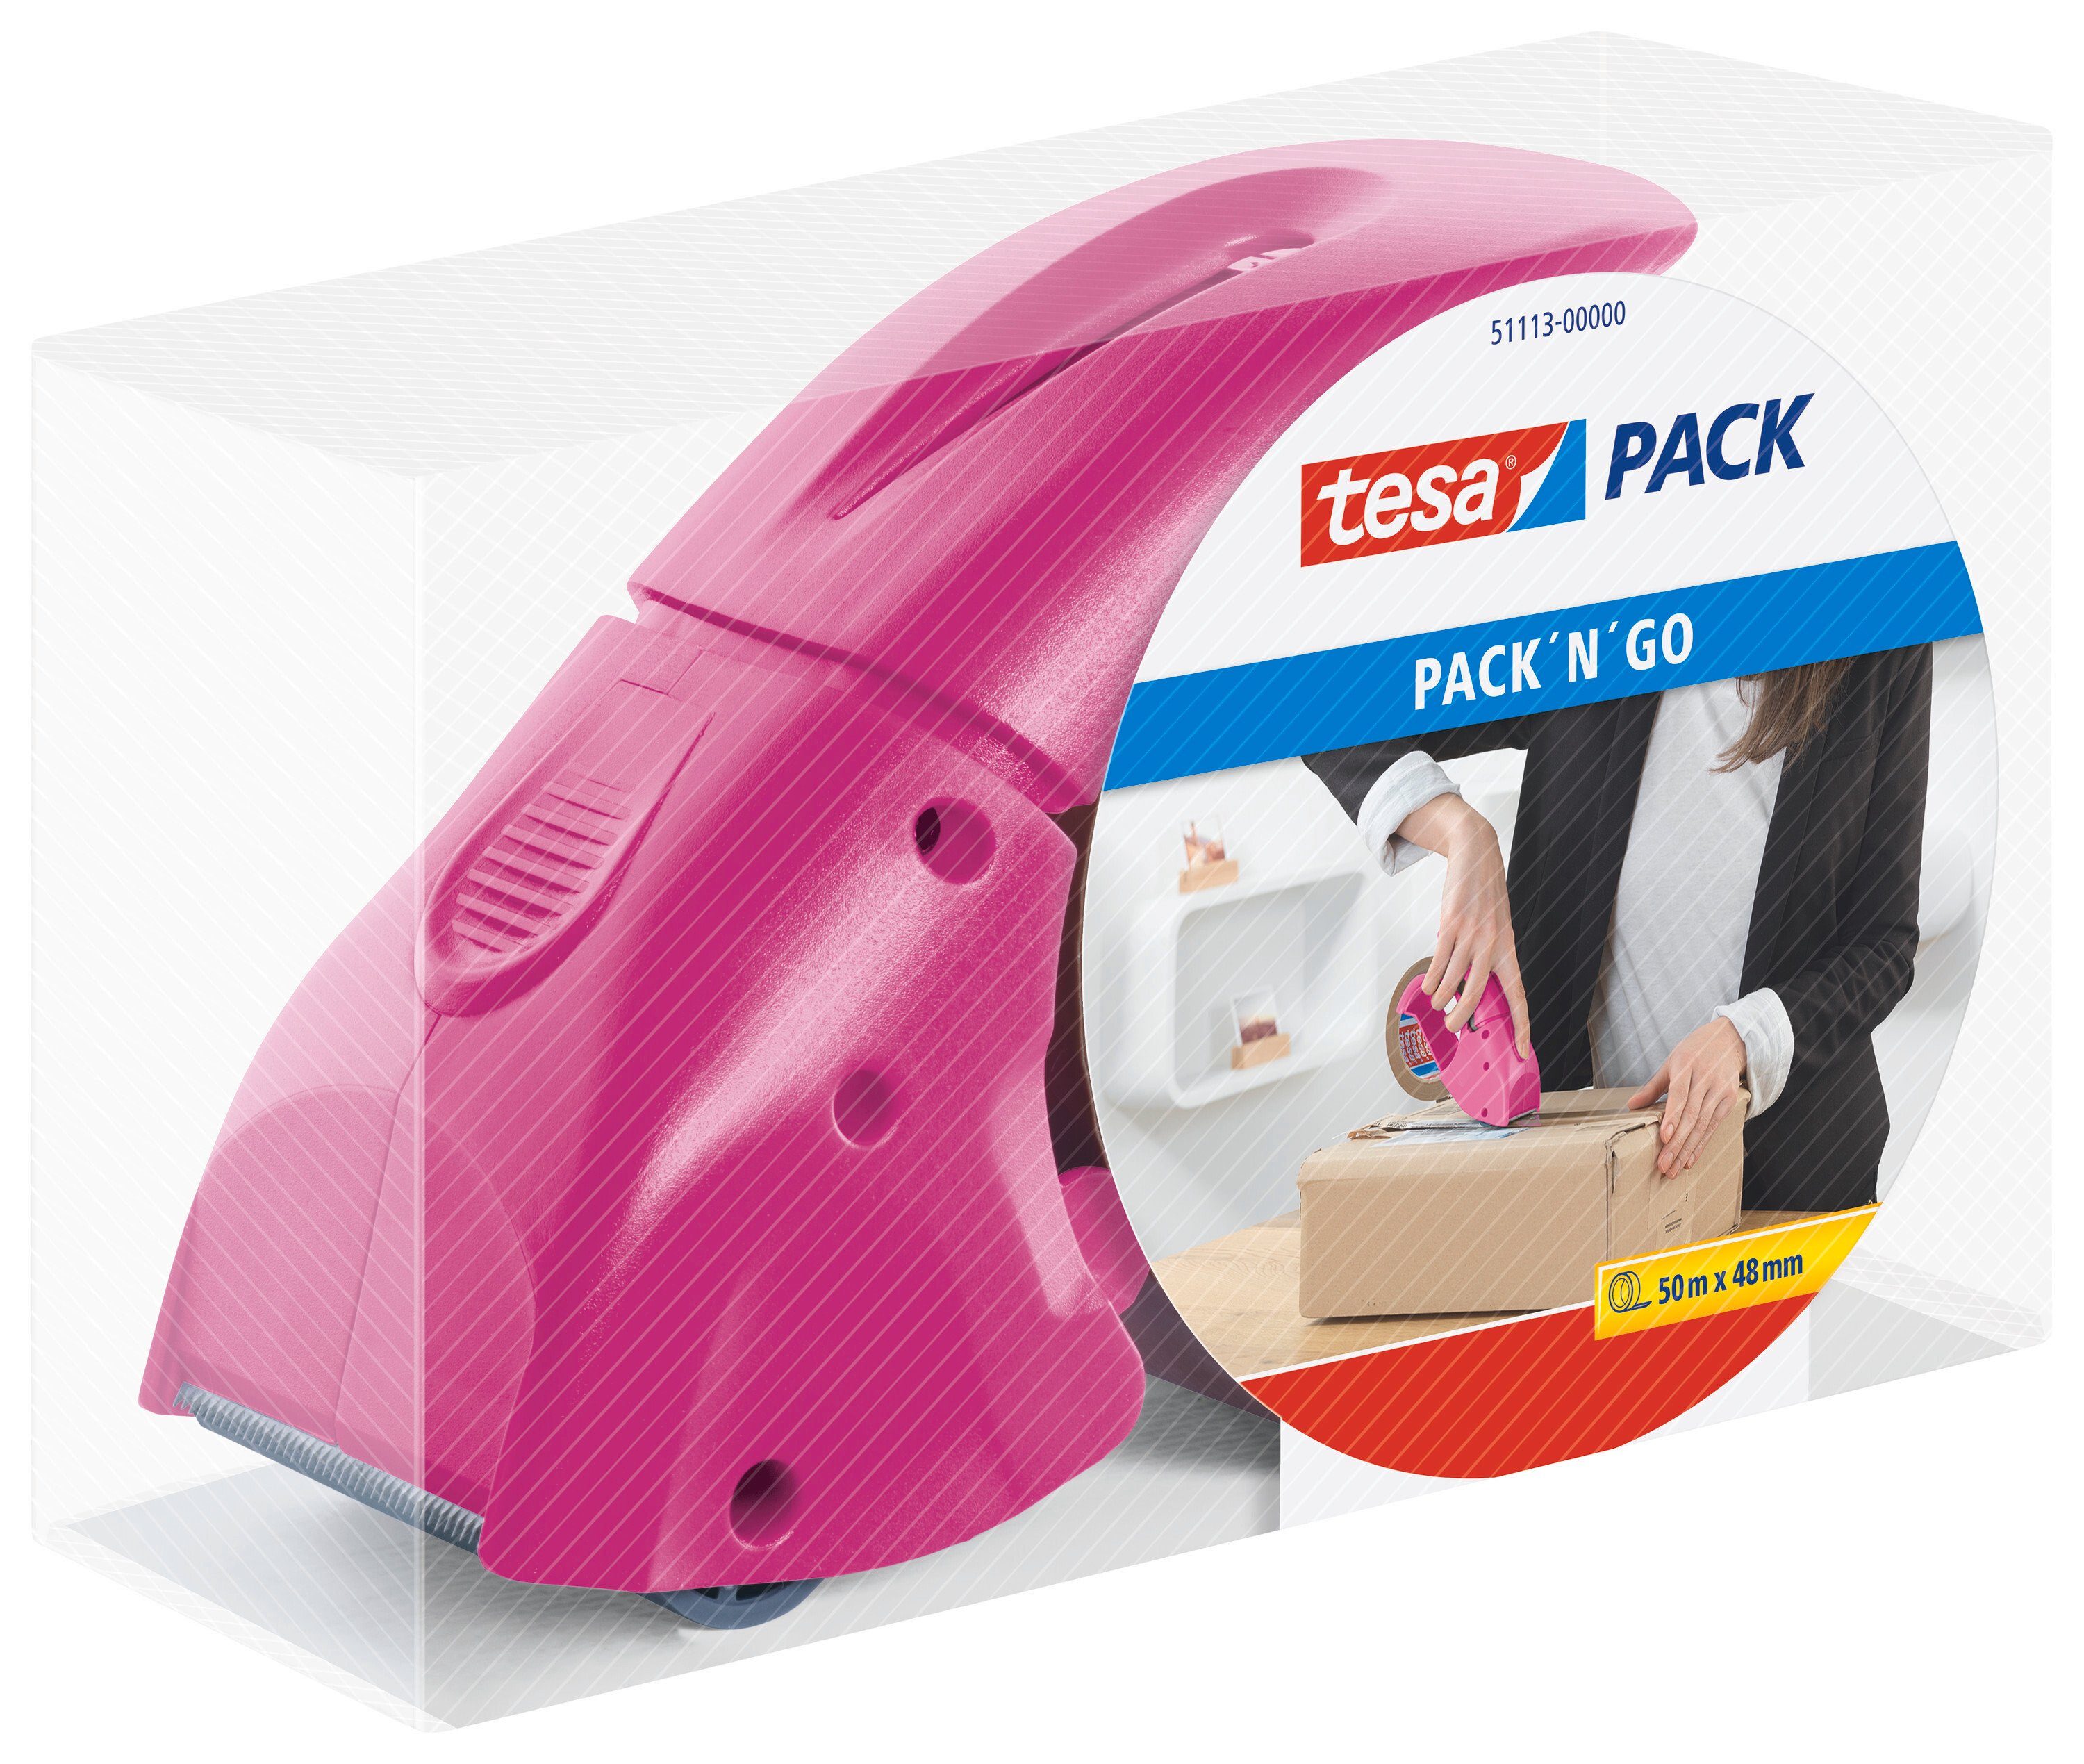 tesa Klebeband tesapack Abroller (Packung, 1-St) Packbandabroller für  sicheres Verpacken - für Packband bis 48 mm